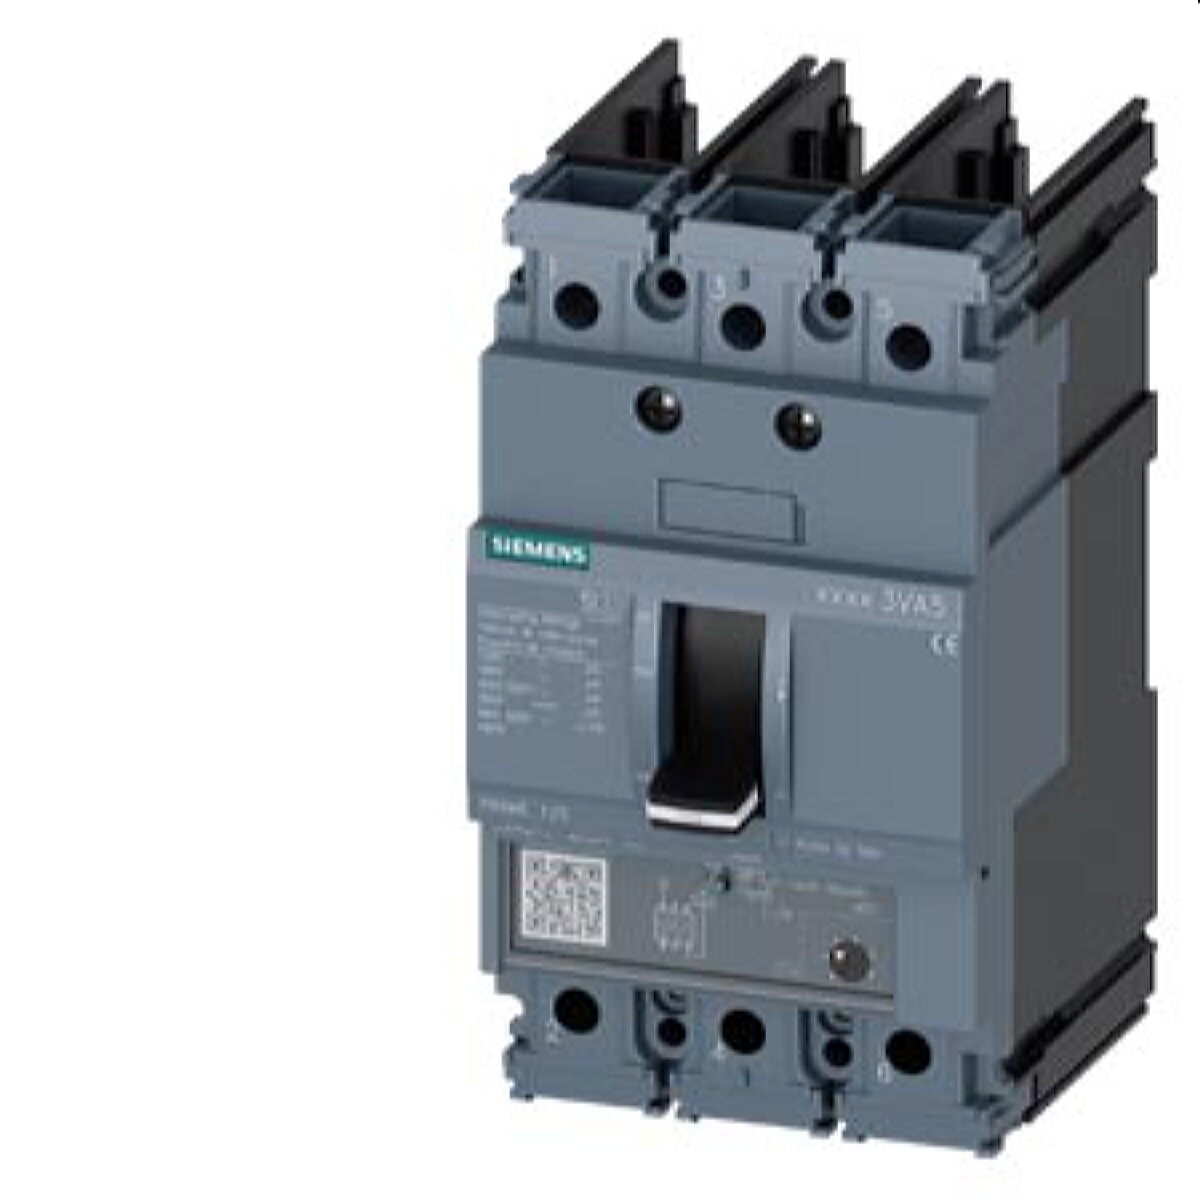 Siemens Leistungsschalter 3VA5 65kA 480V TM230 35A 3VA5135-6EC31-1AA0